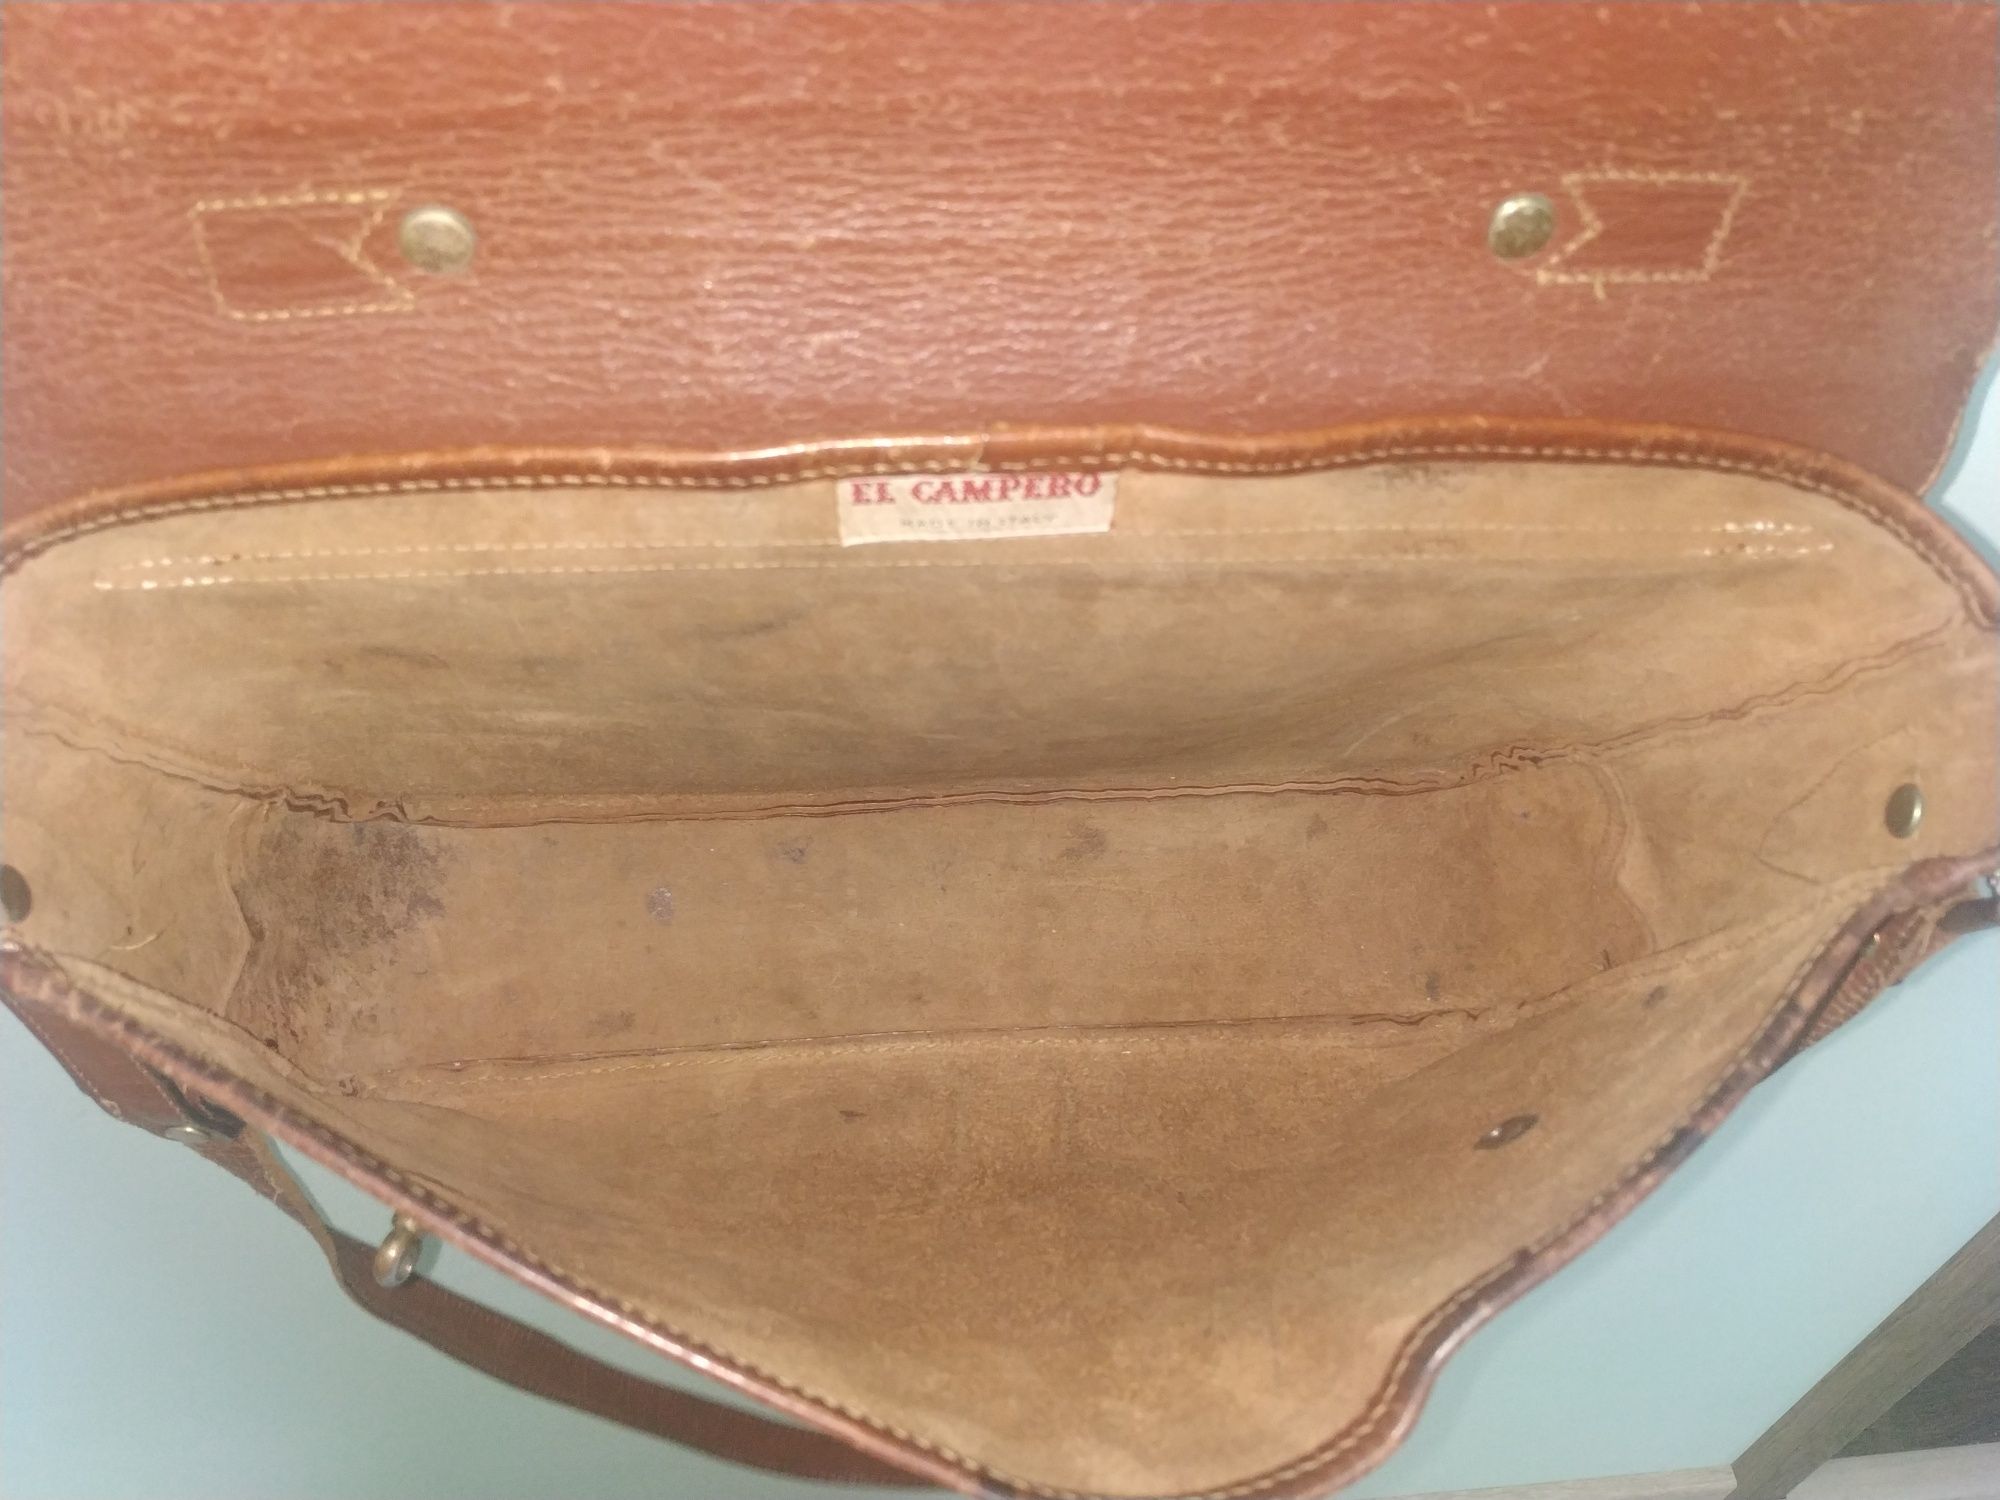 Портфель кожаный El Campero, сумка для ноутбука